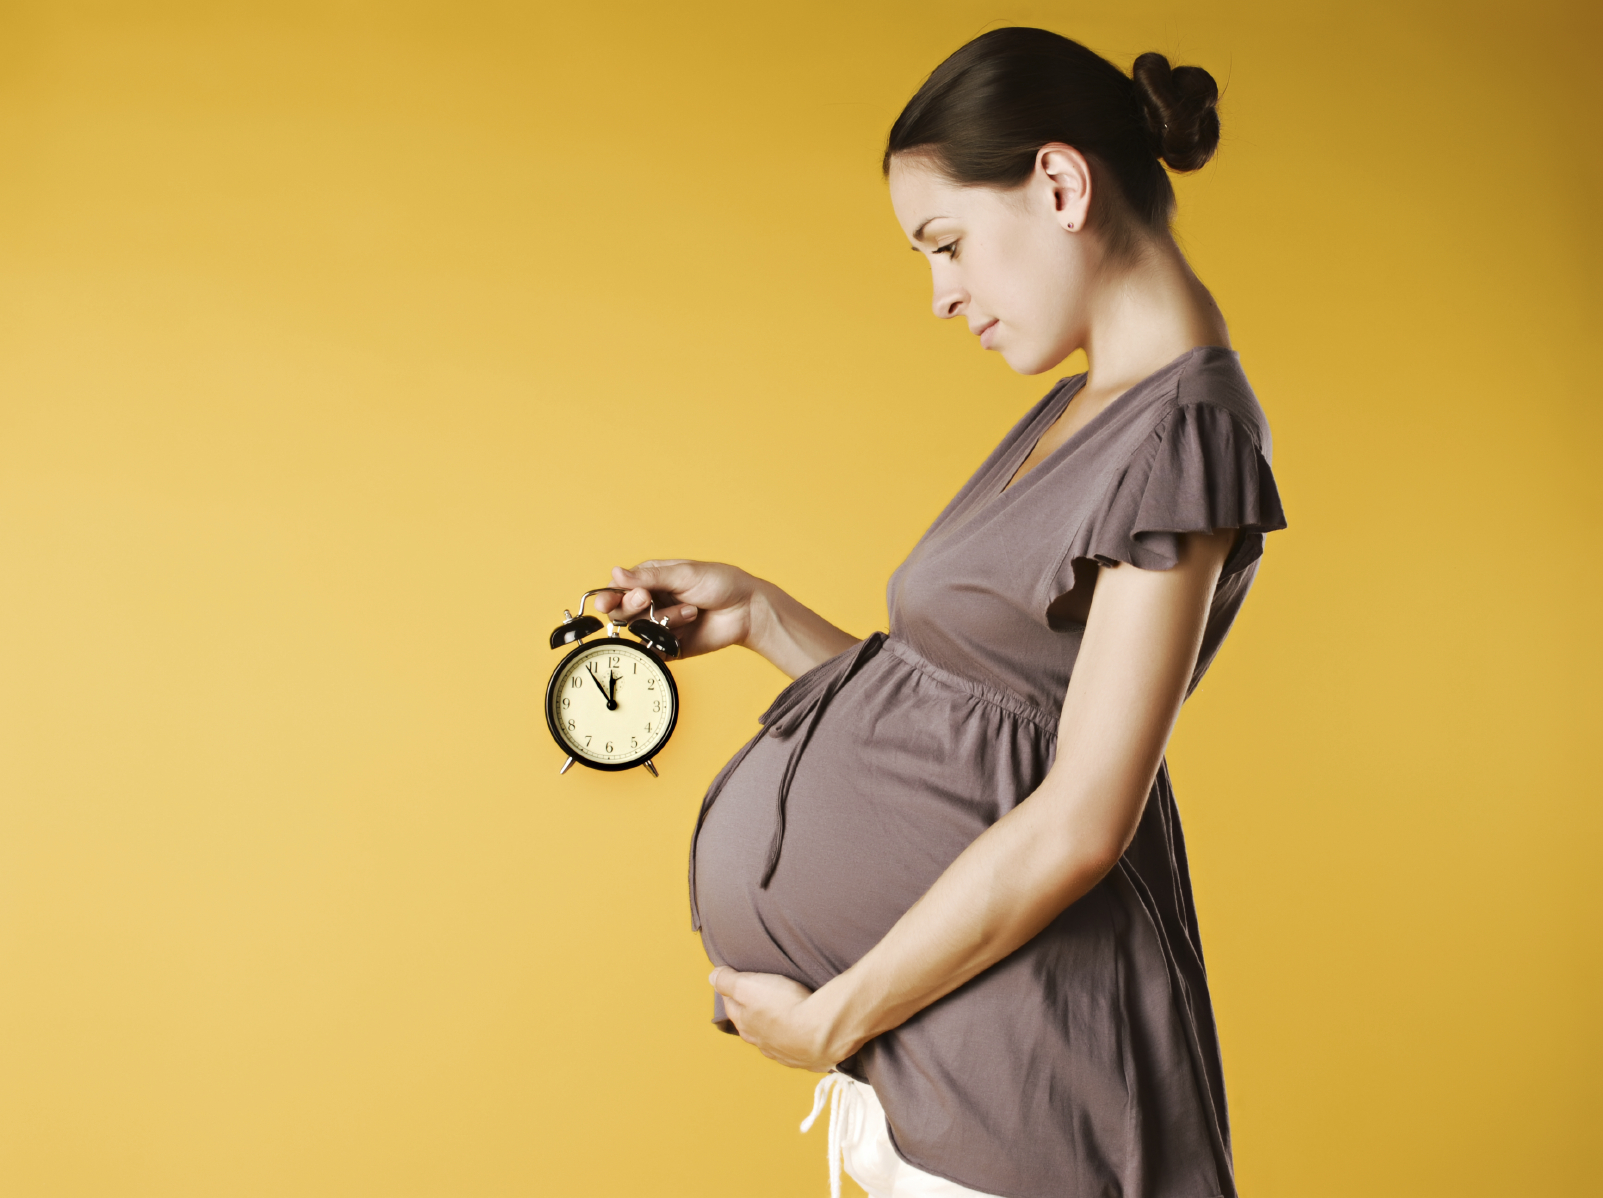 چگونه در دوران بارداری چاق نشویم؟